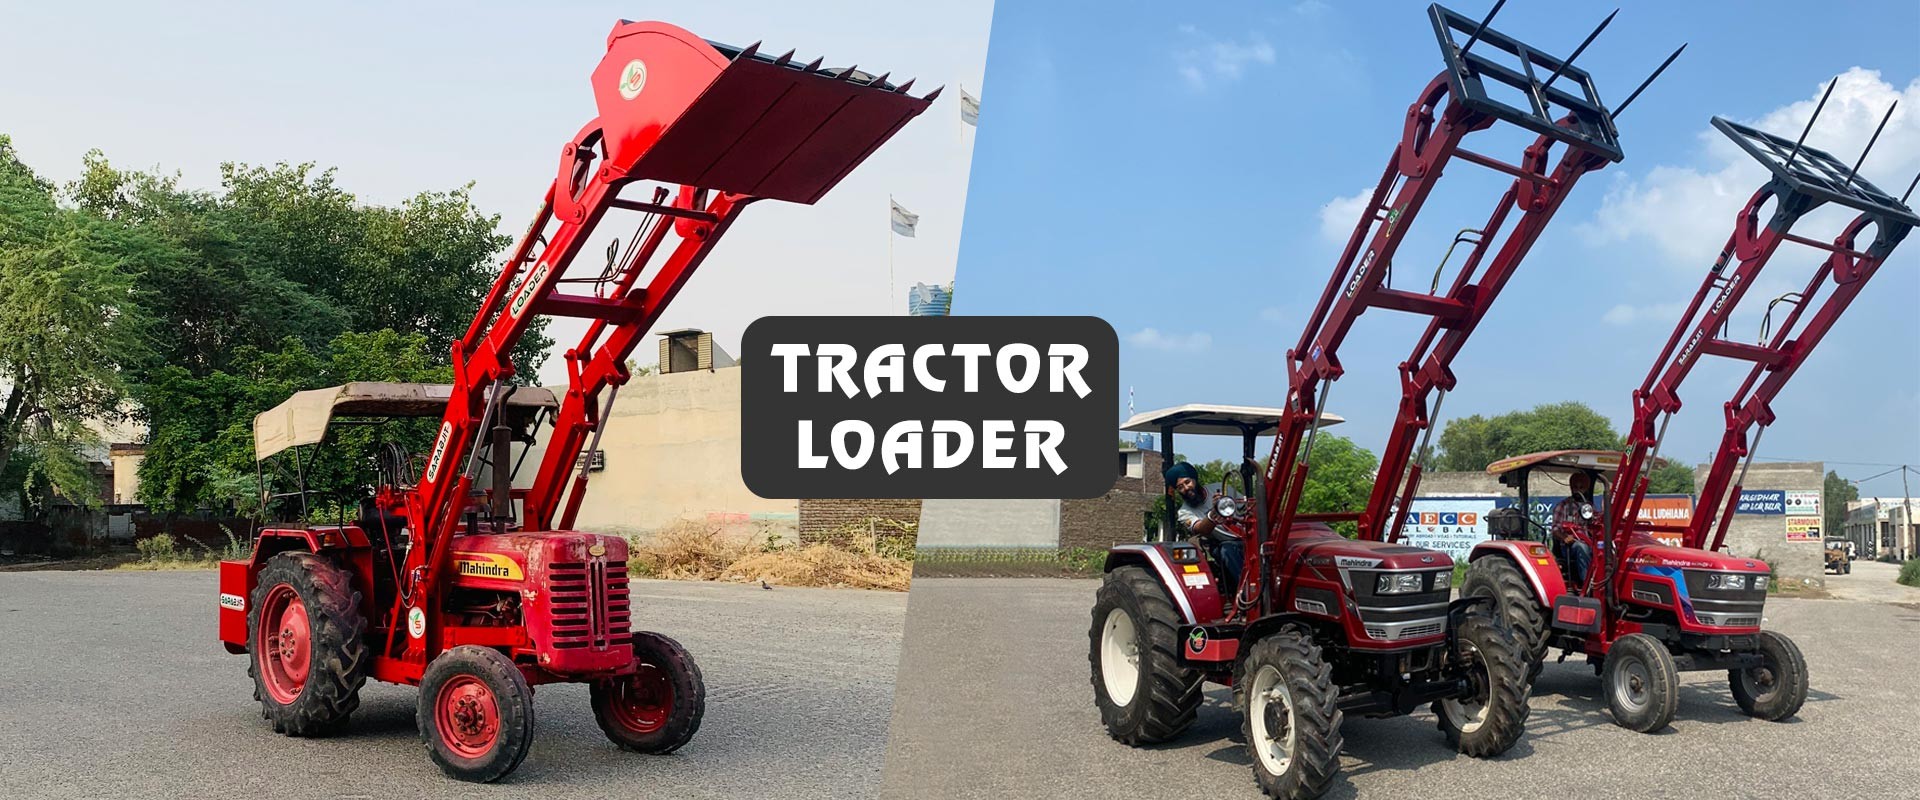 Tractor Loader Slide 2